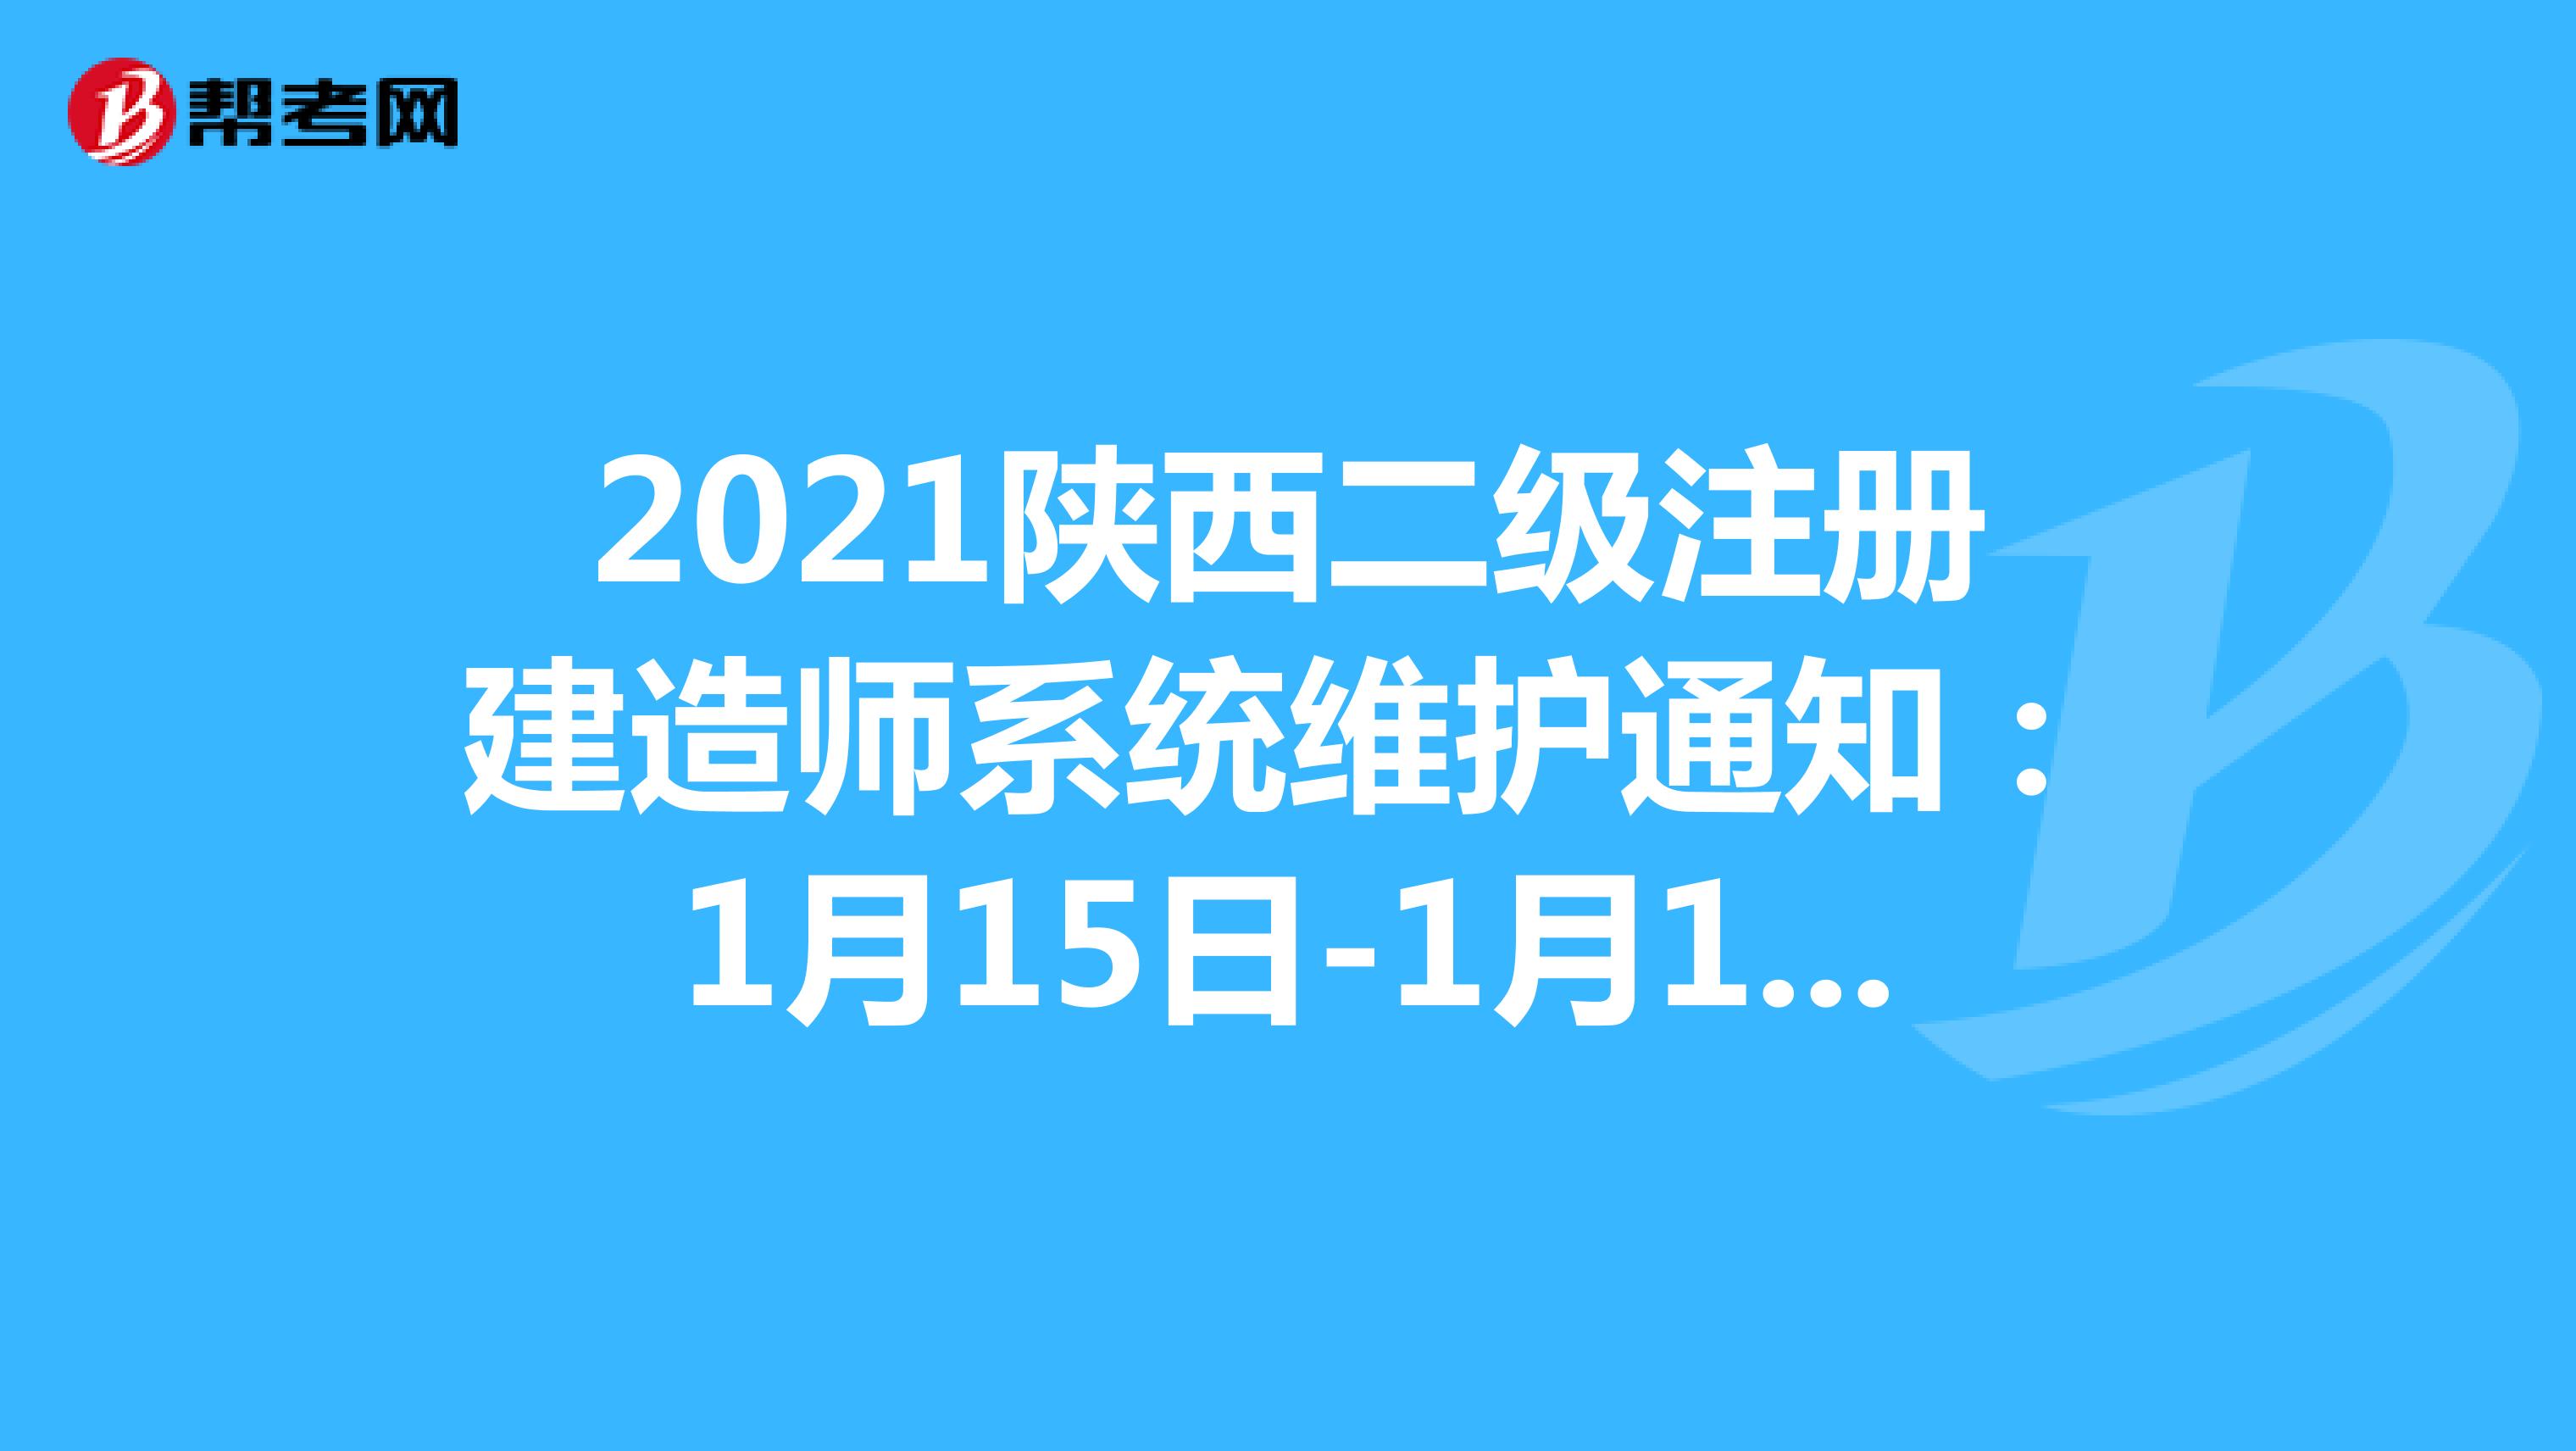 2021陕西二级注册建造师系统维护通知：1月15日-1月18日临时关闭